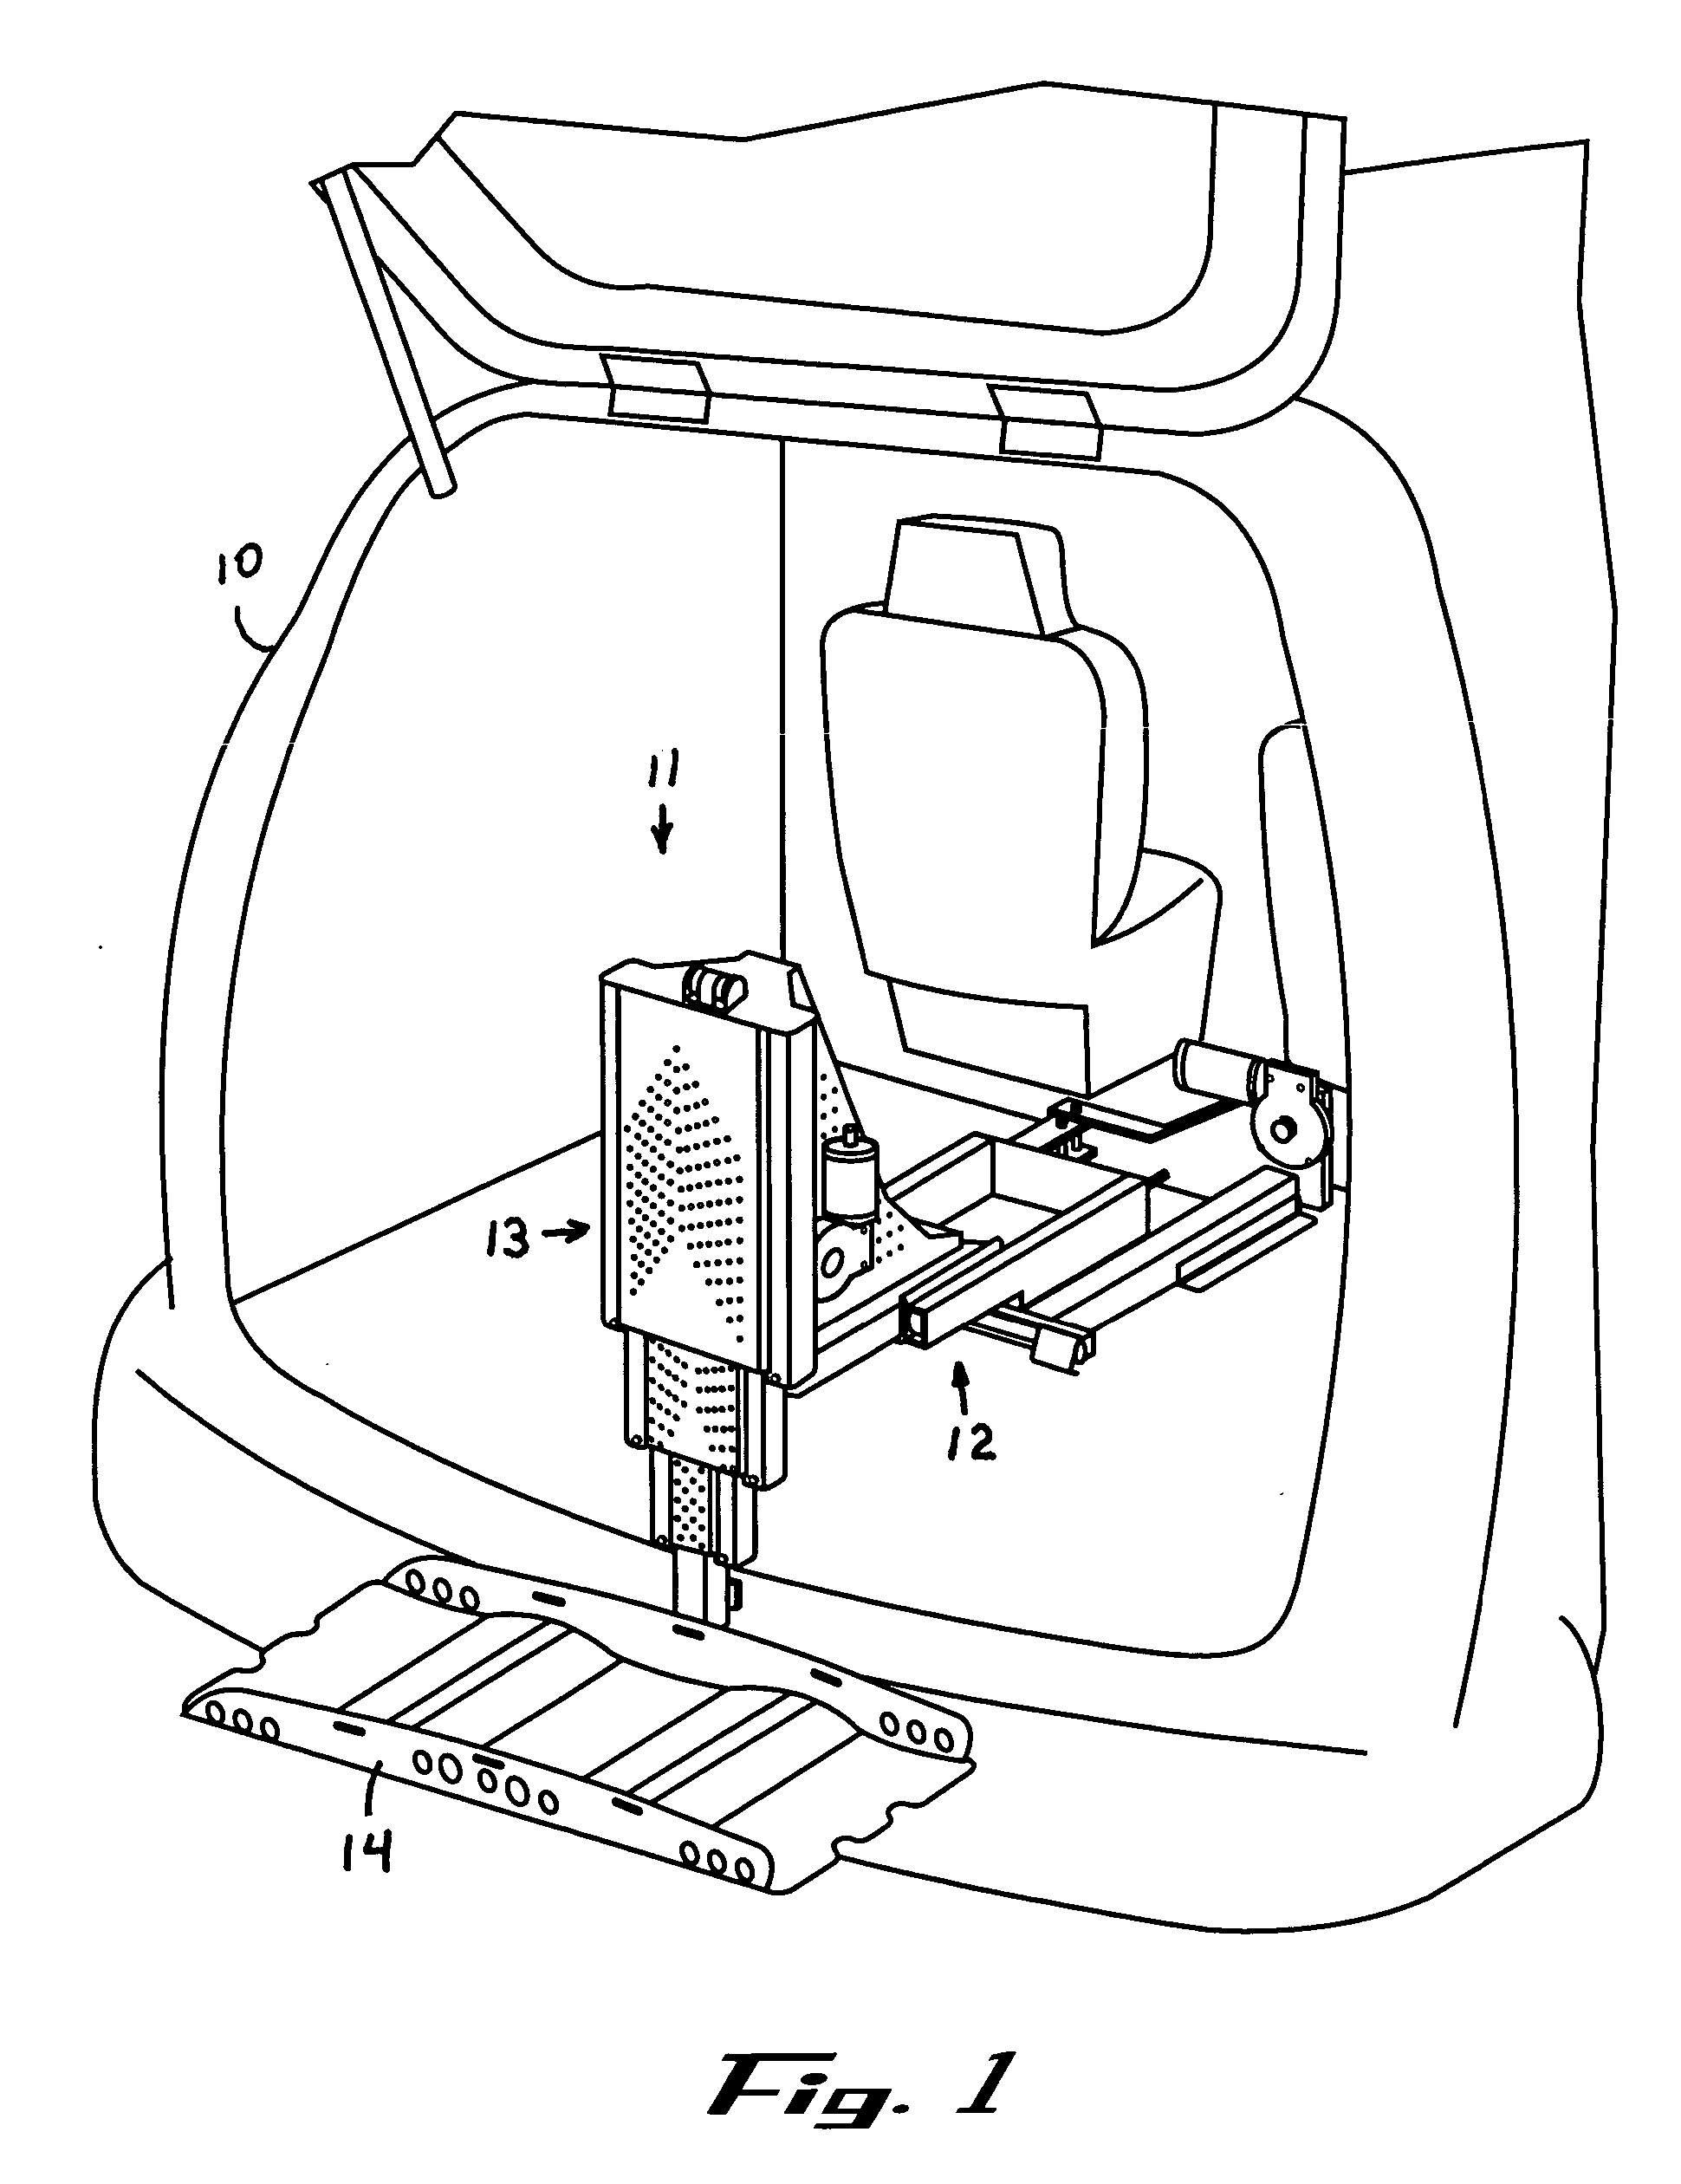 Internal lift for light duty motor vehicle